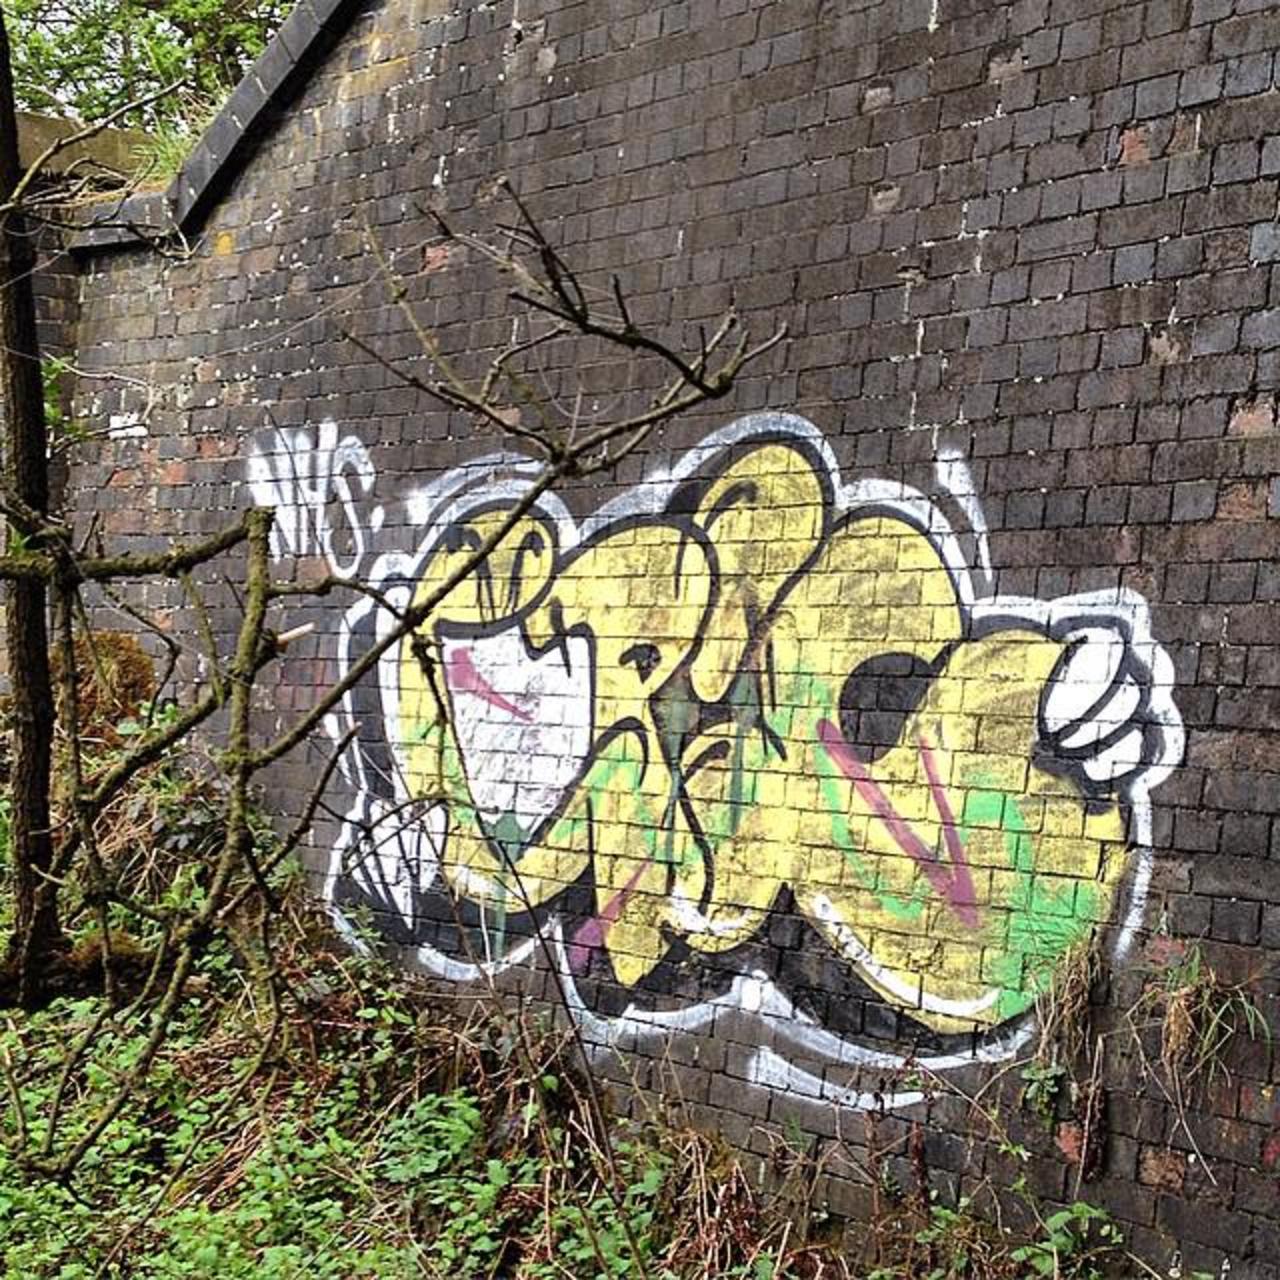 #Graffspotting #PhotoGraff #coleshill #graffiti #streetart #footslap #notmine by westmidzgraffiti http://t.co/KK6RQE2uOF